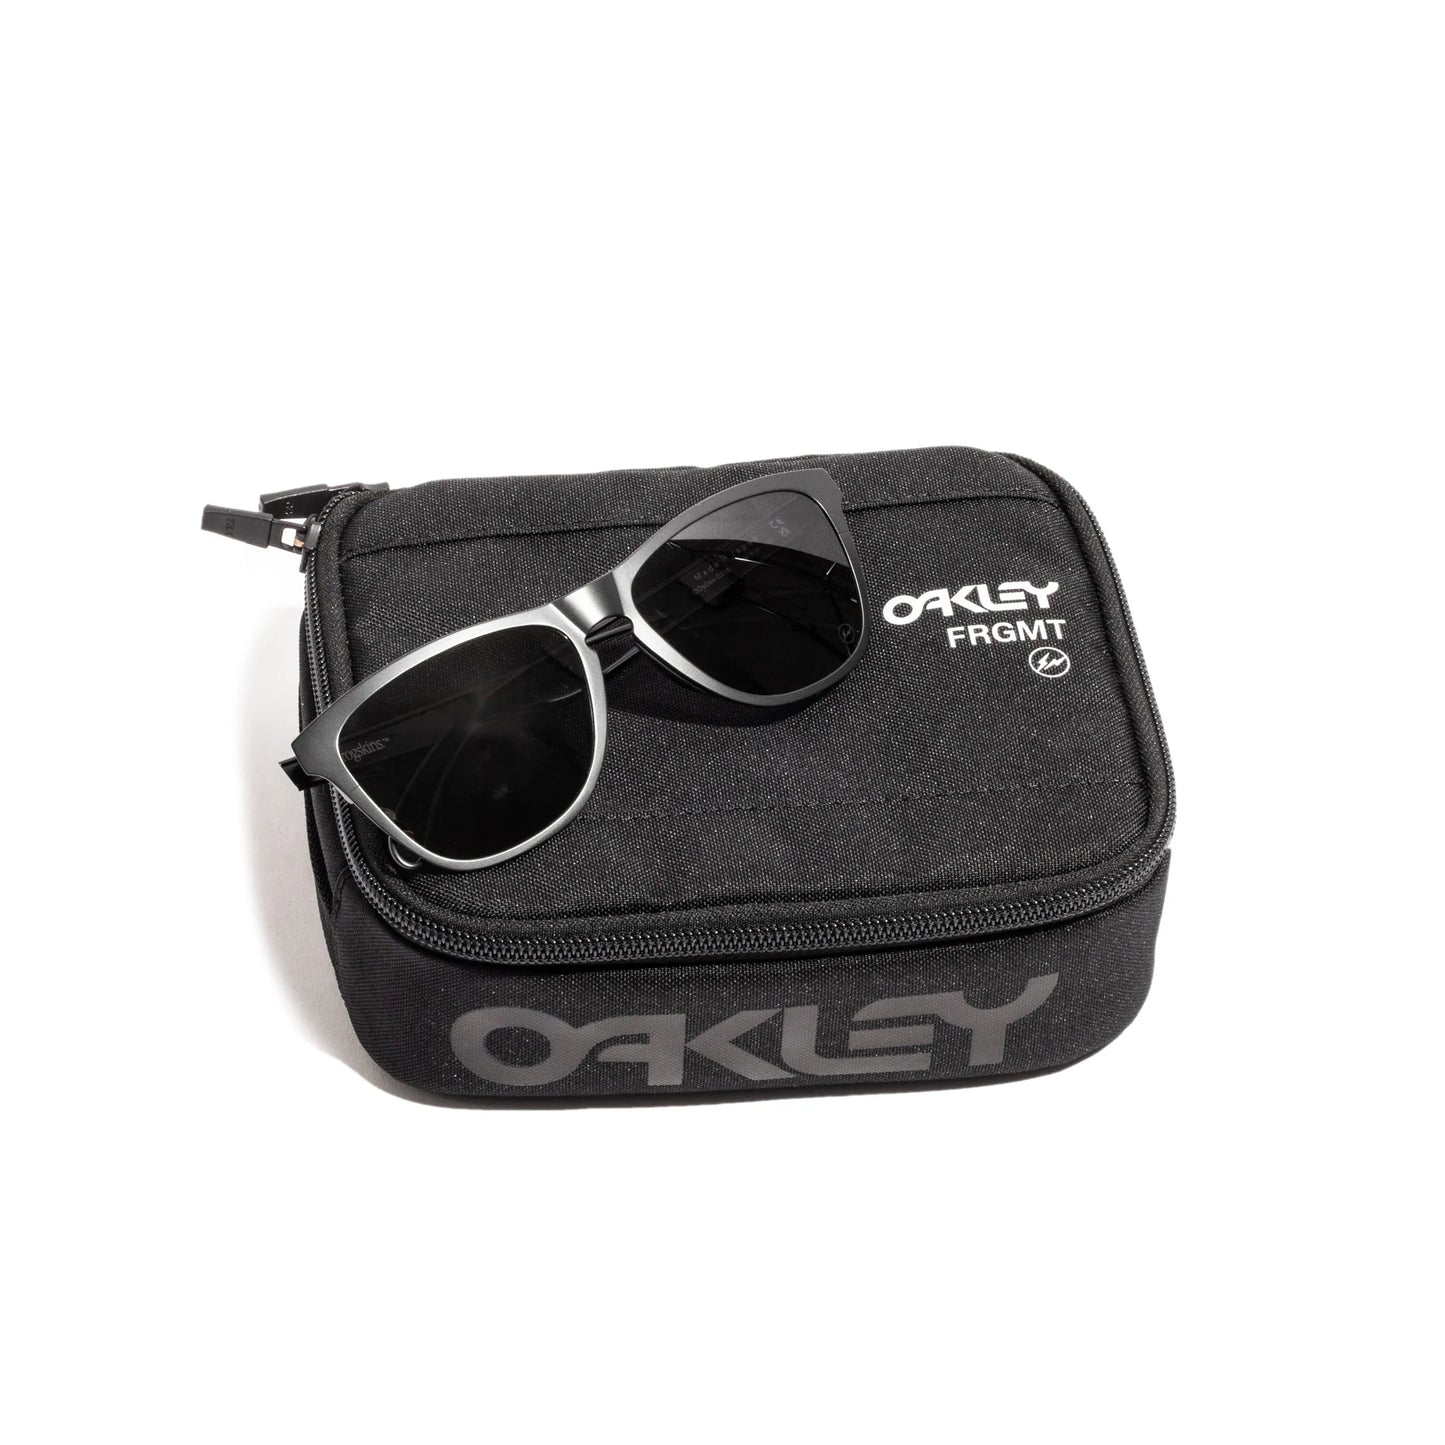 Oakley x Fragment Frogskins Eyeglasses Bundle